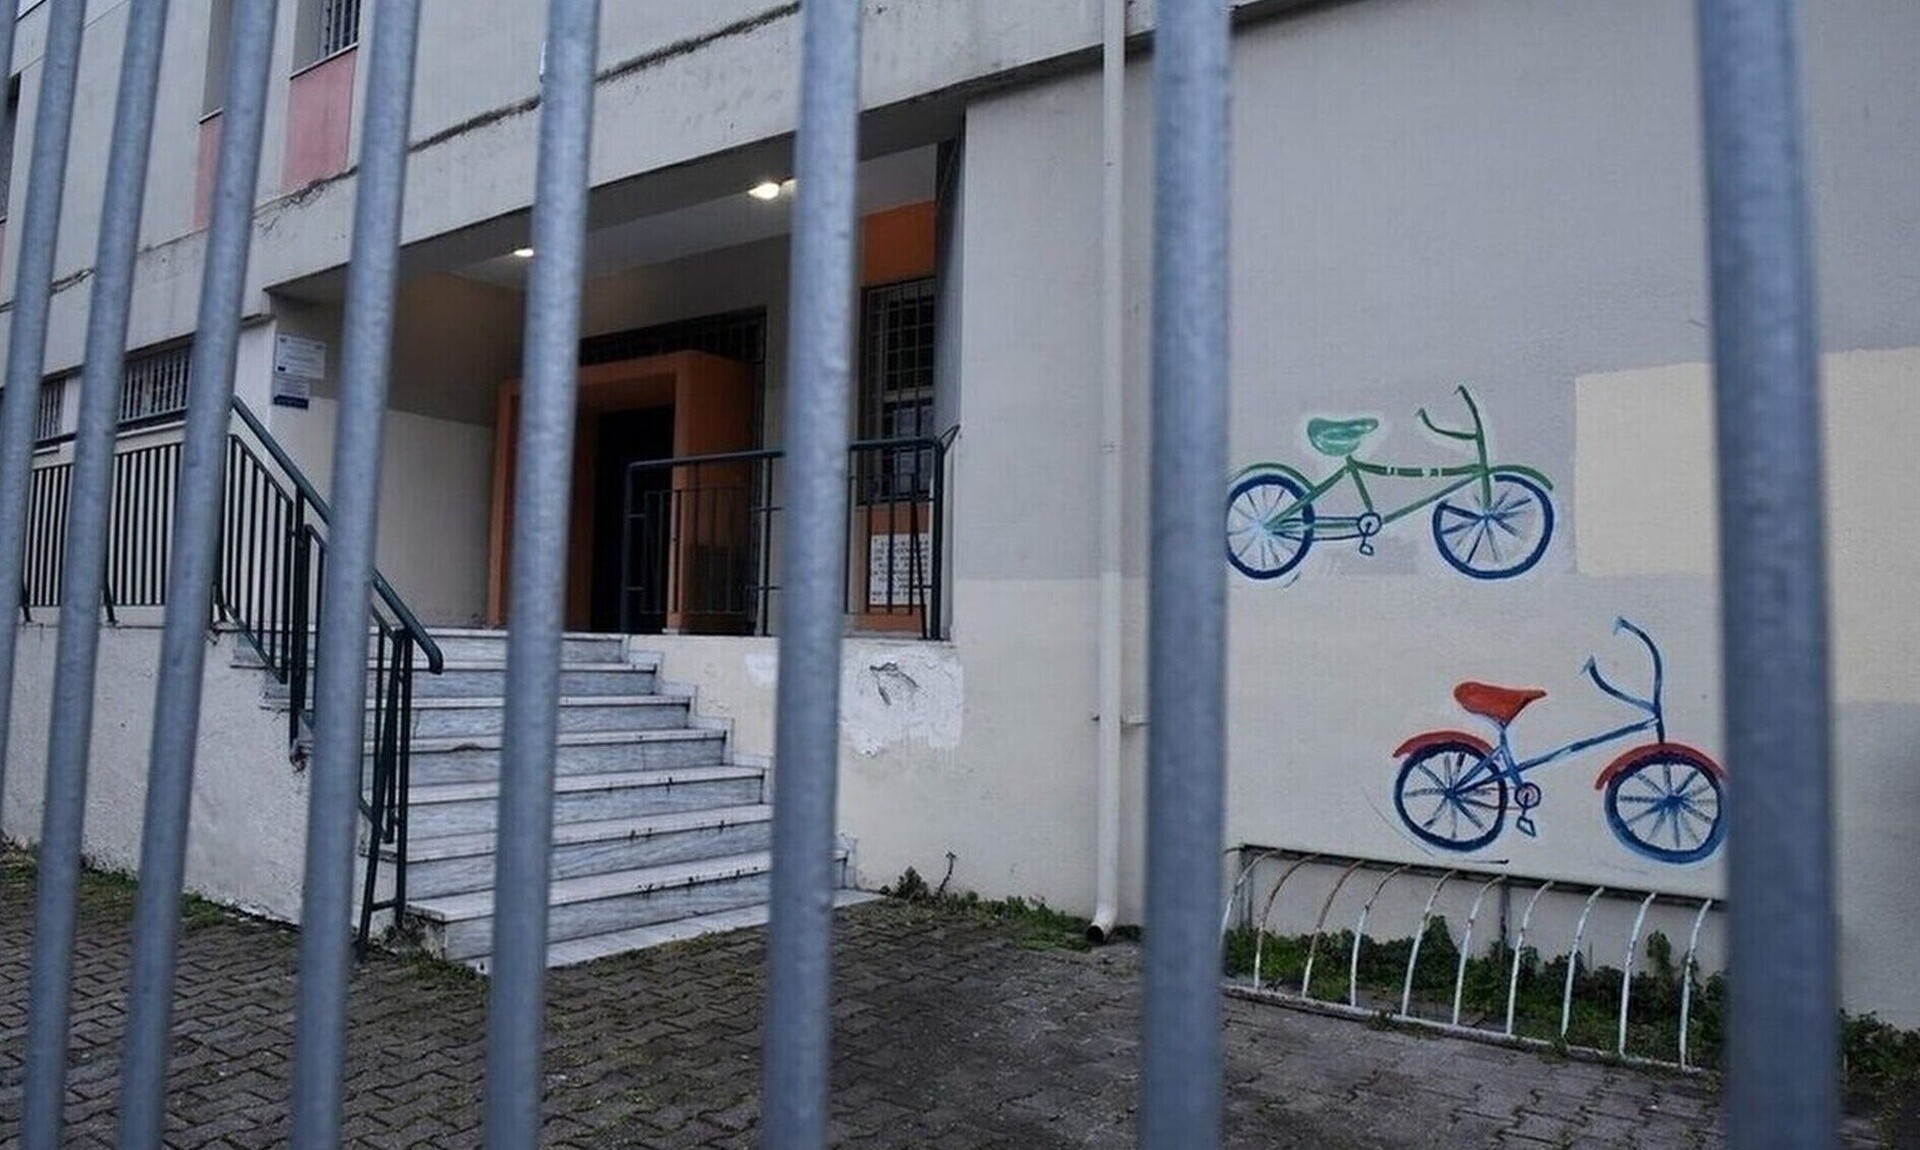 Σέρρες: Κλειστό αύριο το Δημοτικό Σχολείο Προβατά - Αποκολλήθηκαν σοβάδες από τη οροφή αίθουσας